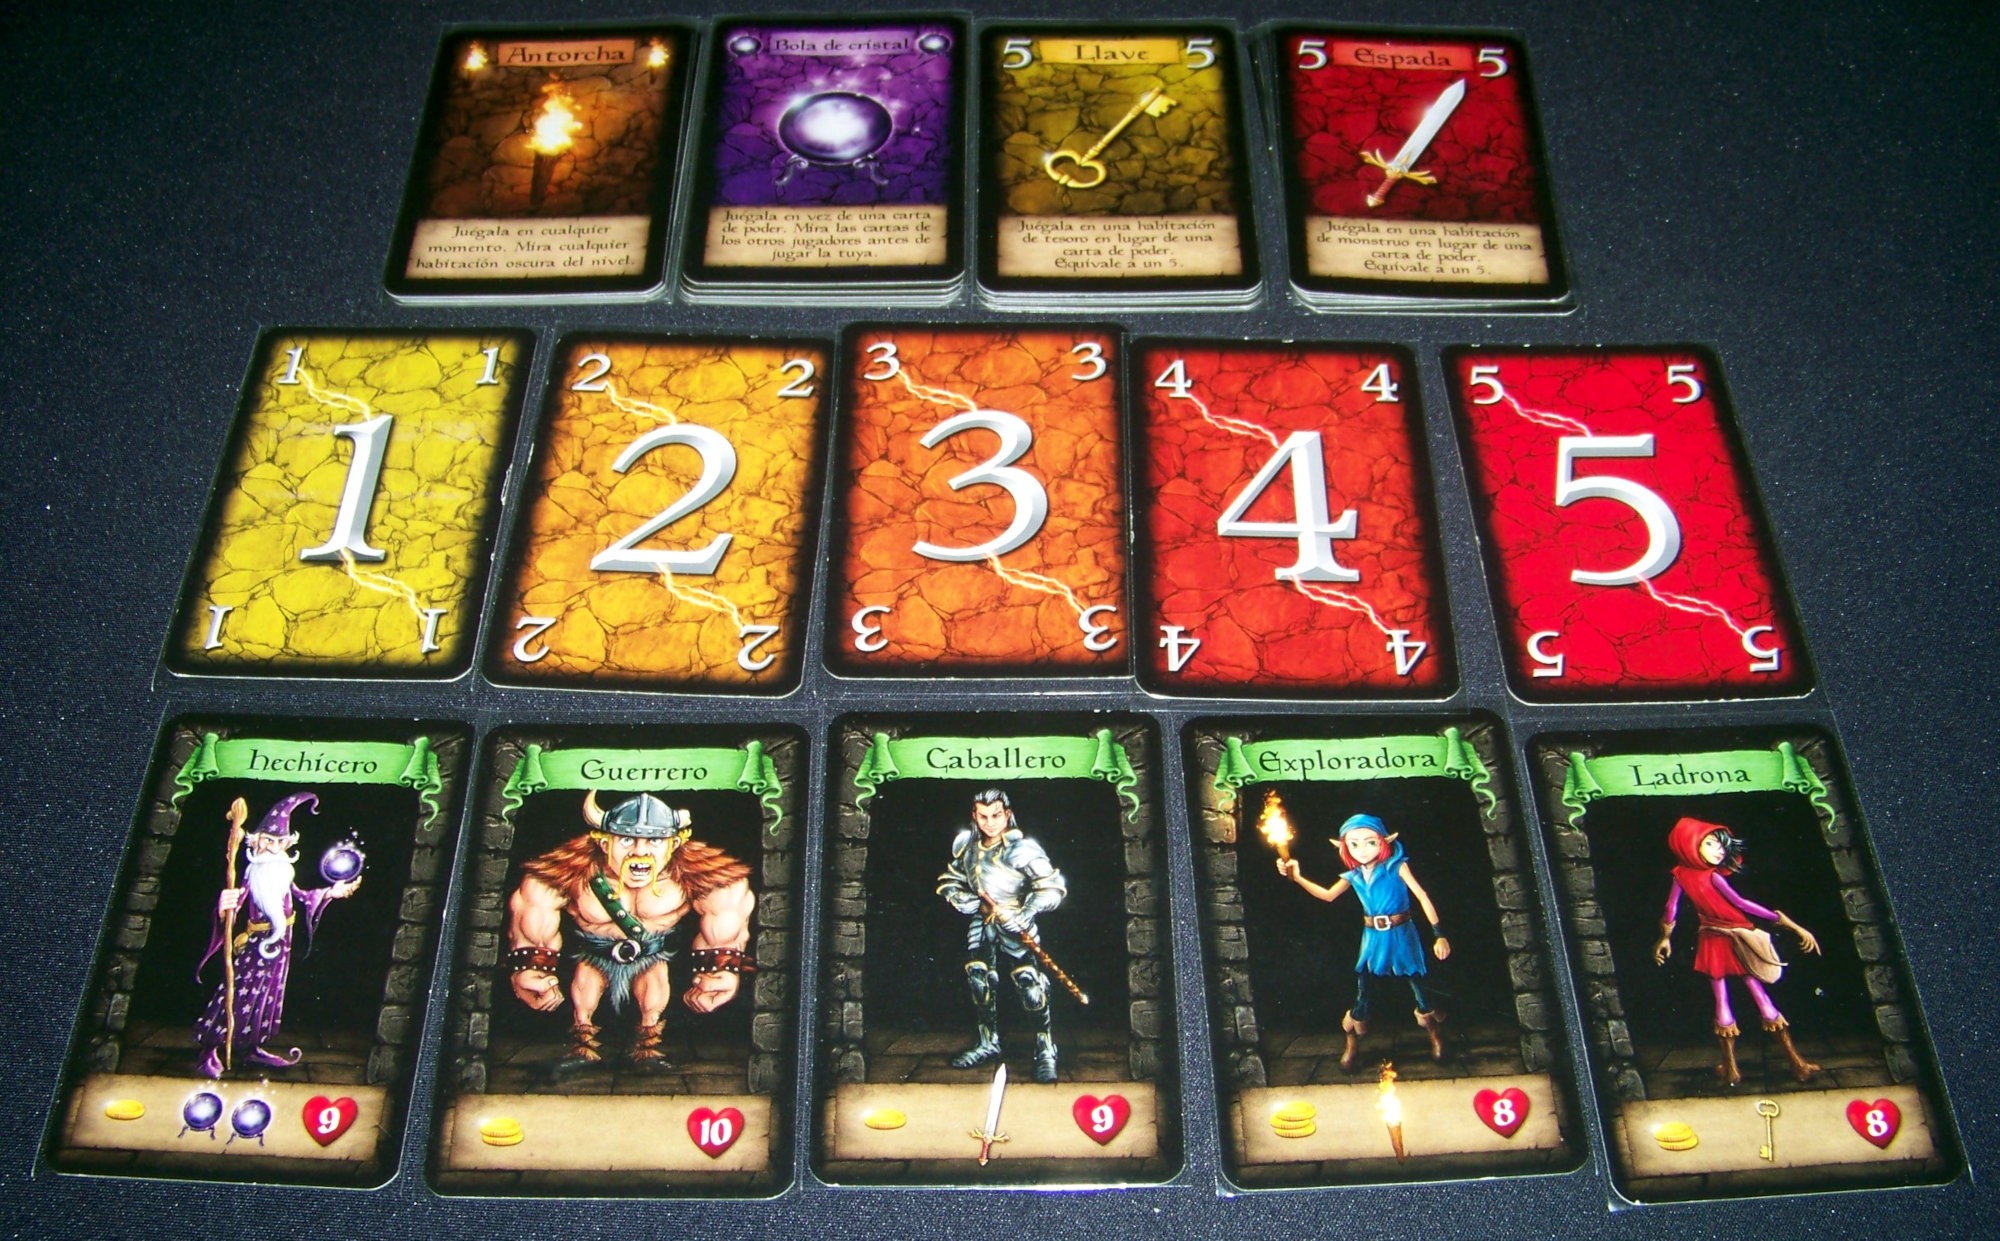 Juego de mesa Dungeon Raiders - cartas de poder, objeto y personajes